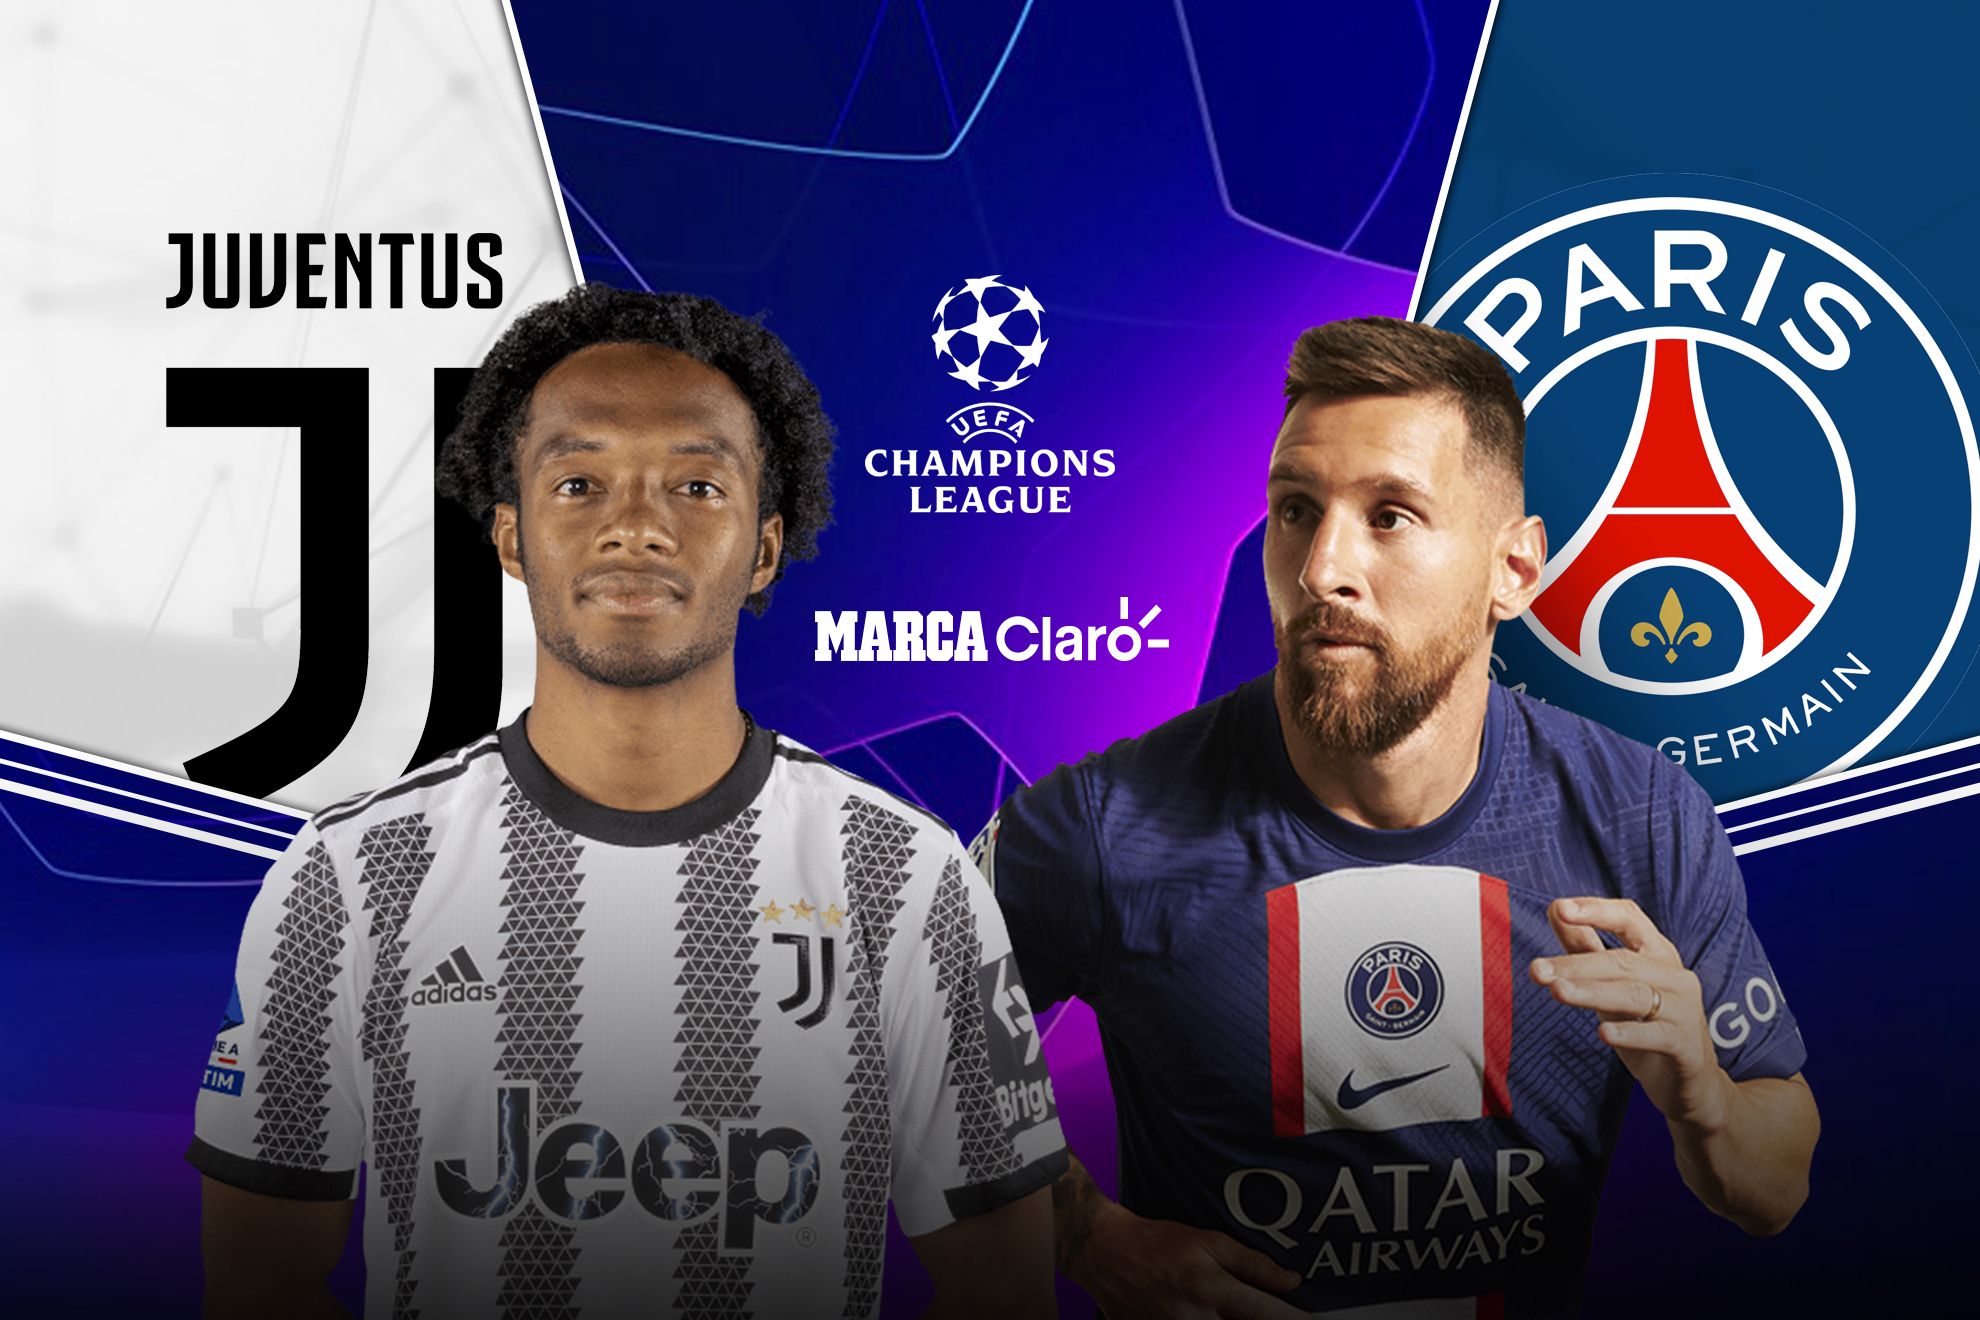 Juventus vs Paris Saint-Germain, en vivo juego de la jornada 6 de la Champions League